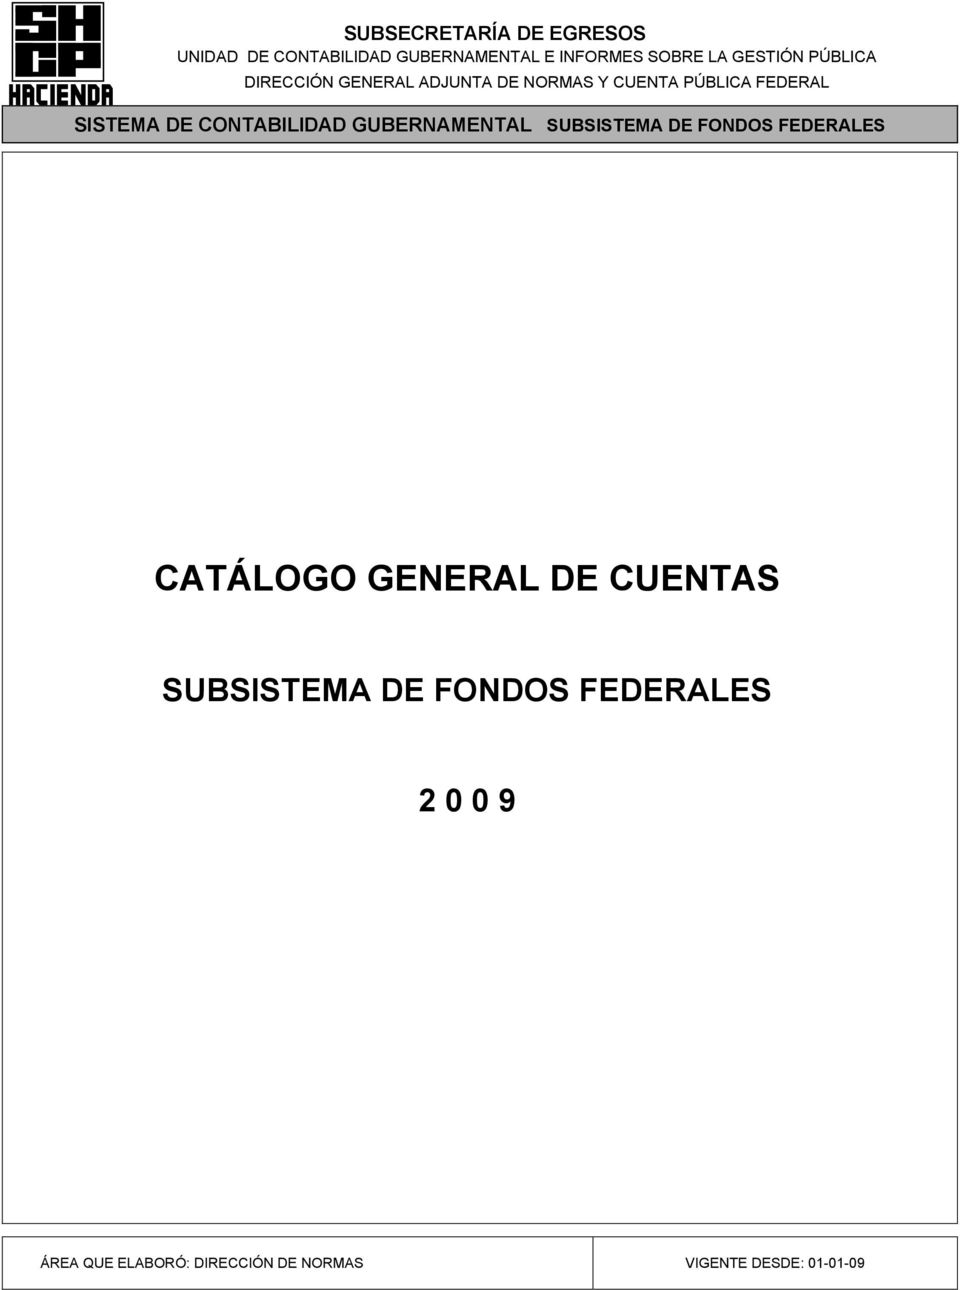 CATÁLOGO GENERAL DE CUENTAS